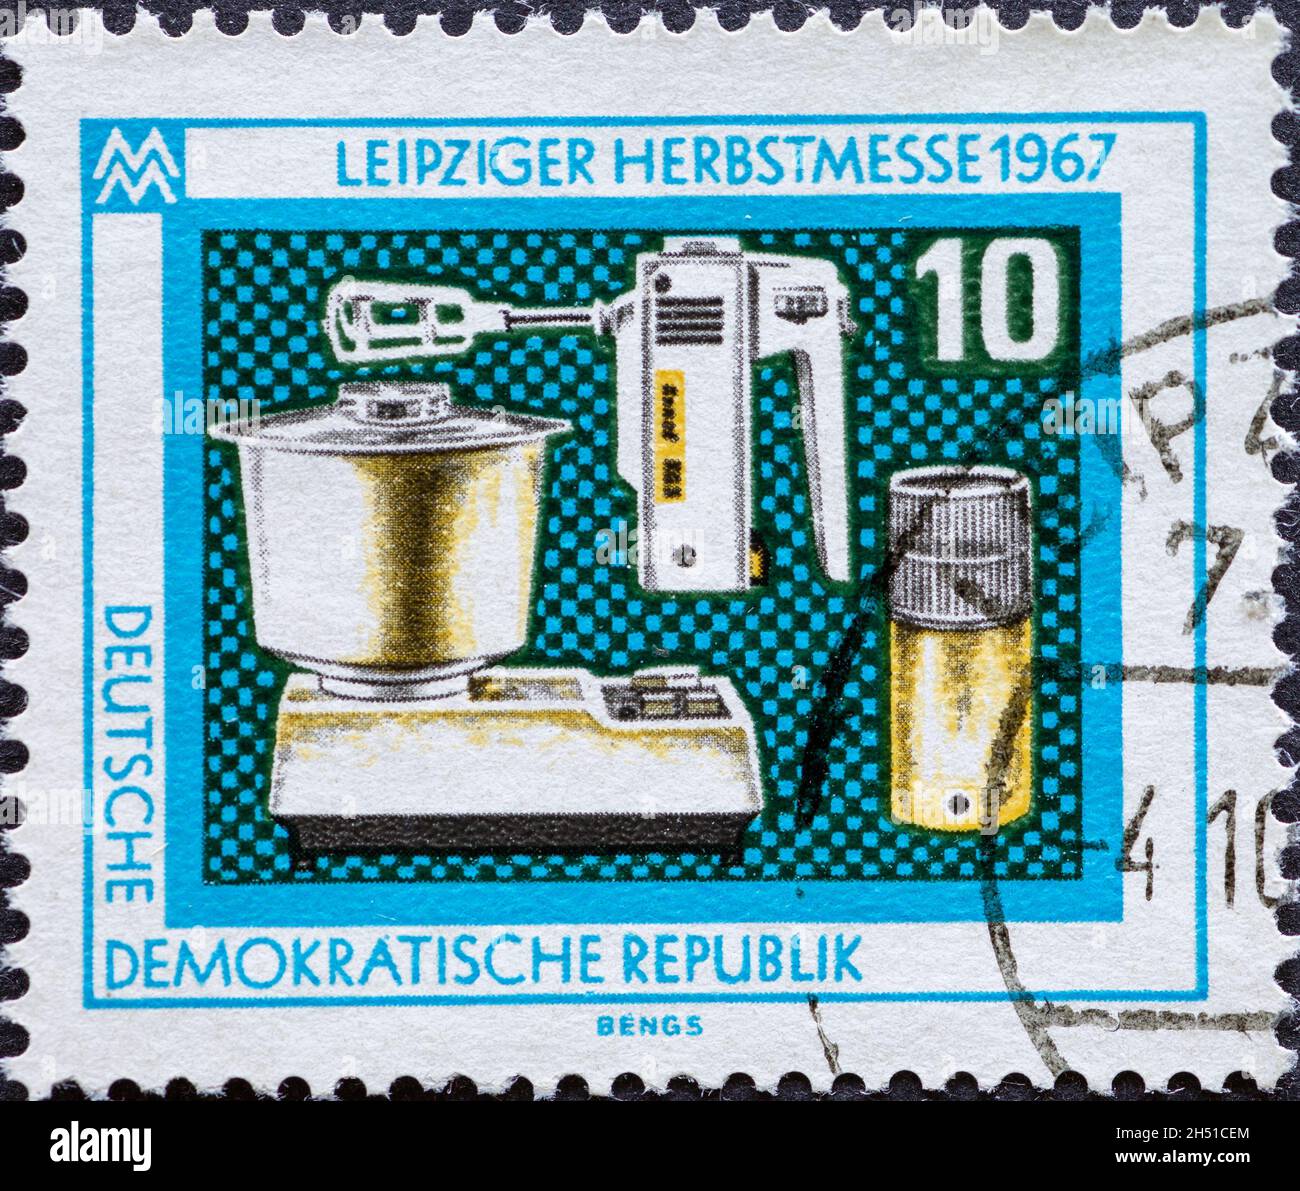 ALLEMAGNE, DDR - VERS 1967: Timbre-poste de l'Allemagne, GDR montrant quelques appareils de cuisine pour la foire d'automne de Leipzig 1967 Banque D'Images